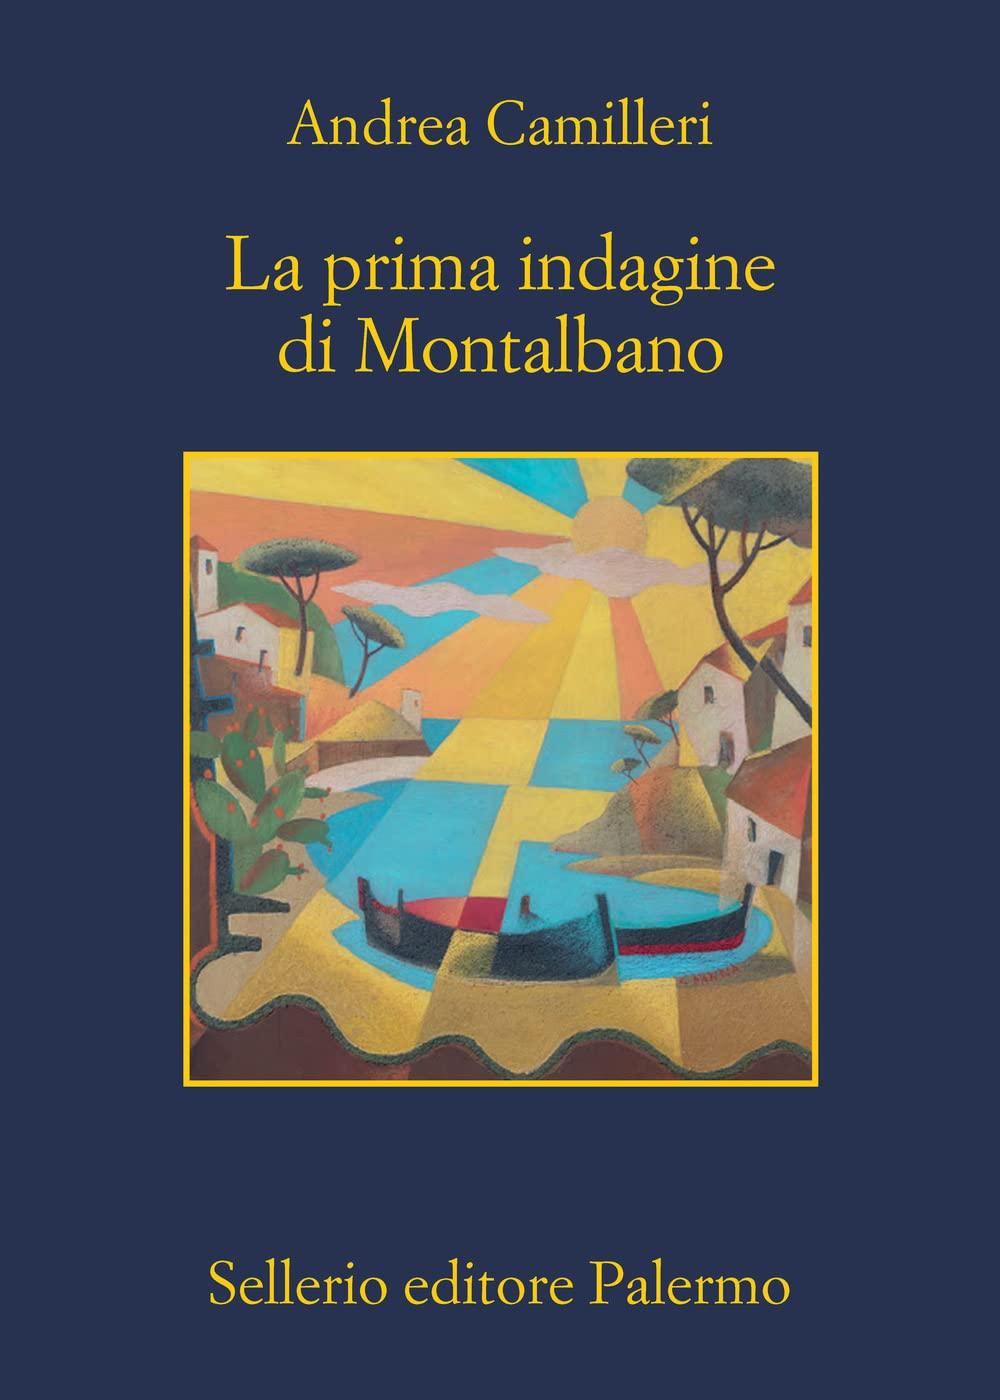 Libro "La prima indagine di Montalbano" di Andrea Camilleri